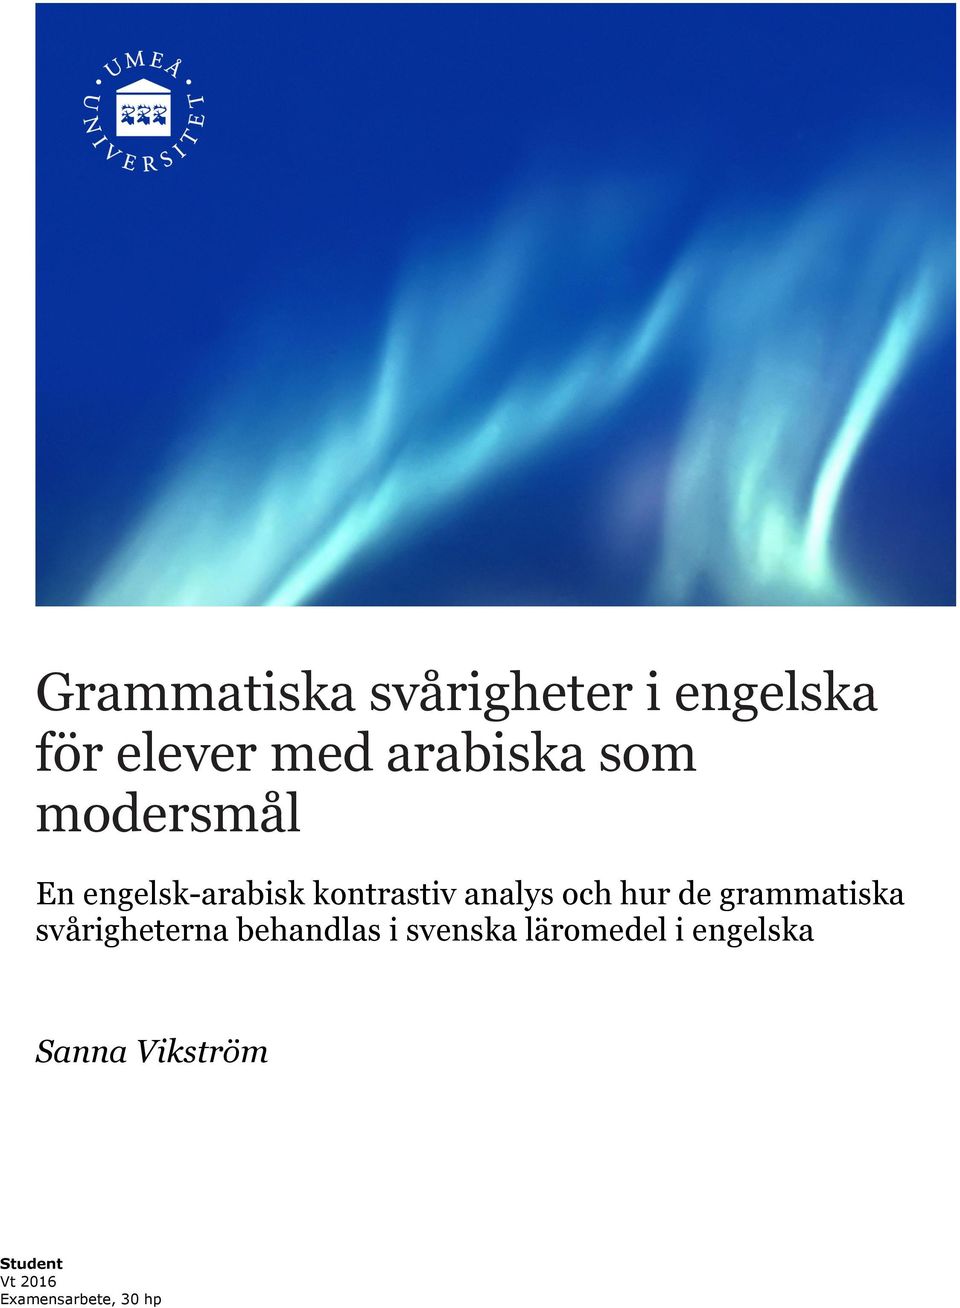 grammatiska svårigheterna behandlas i svenska läromedel i